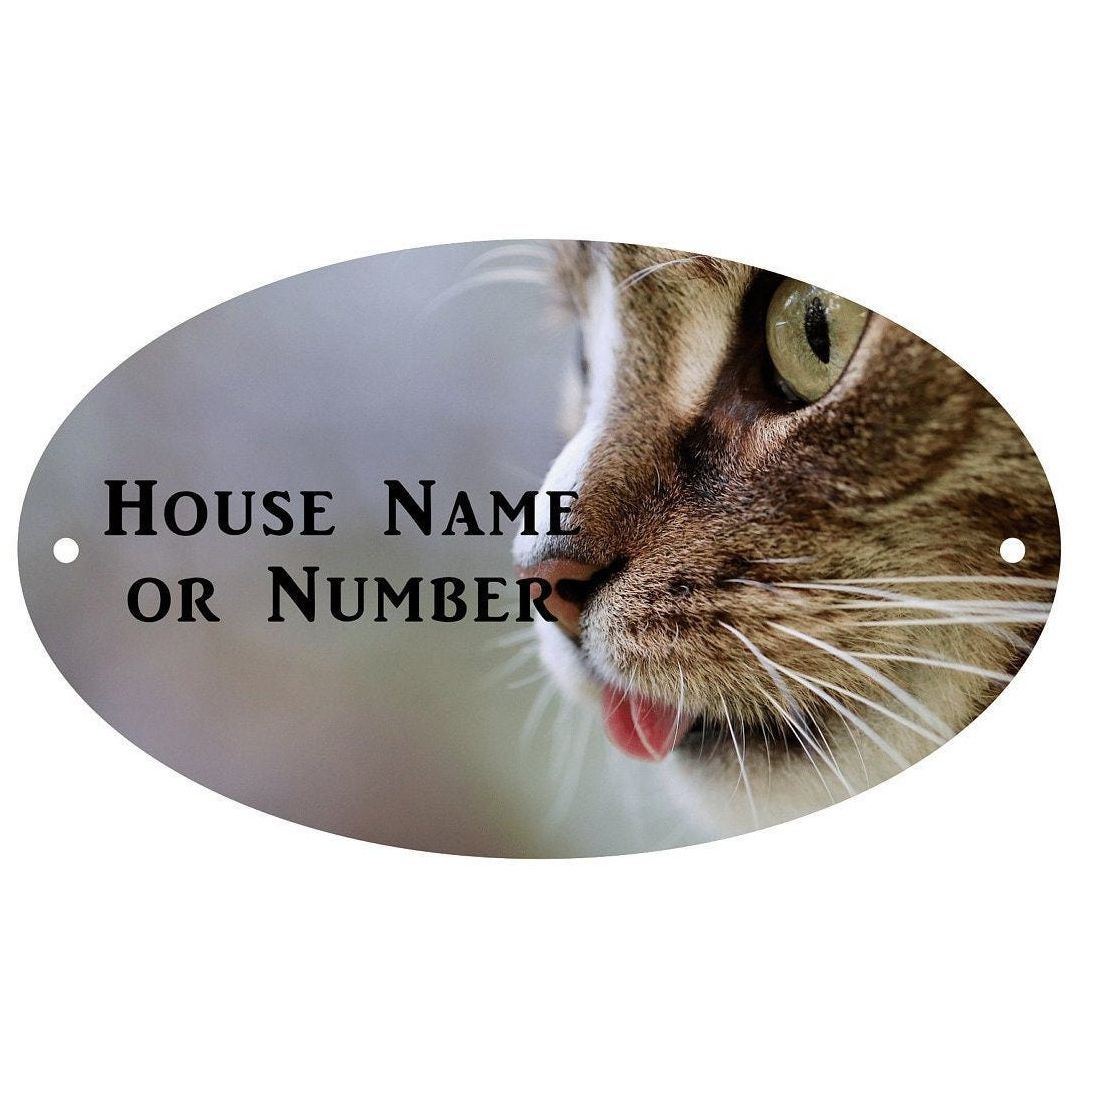 Rótulo Fotográfico Personalizado de Casa......... (Click para Seleccionar el Diseño que Requieres)